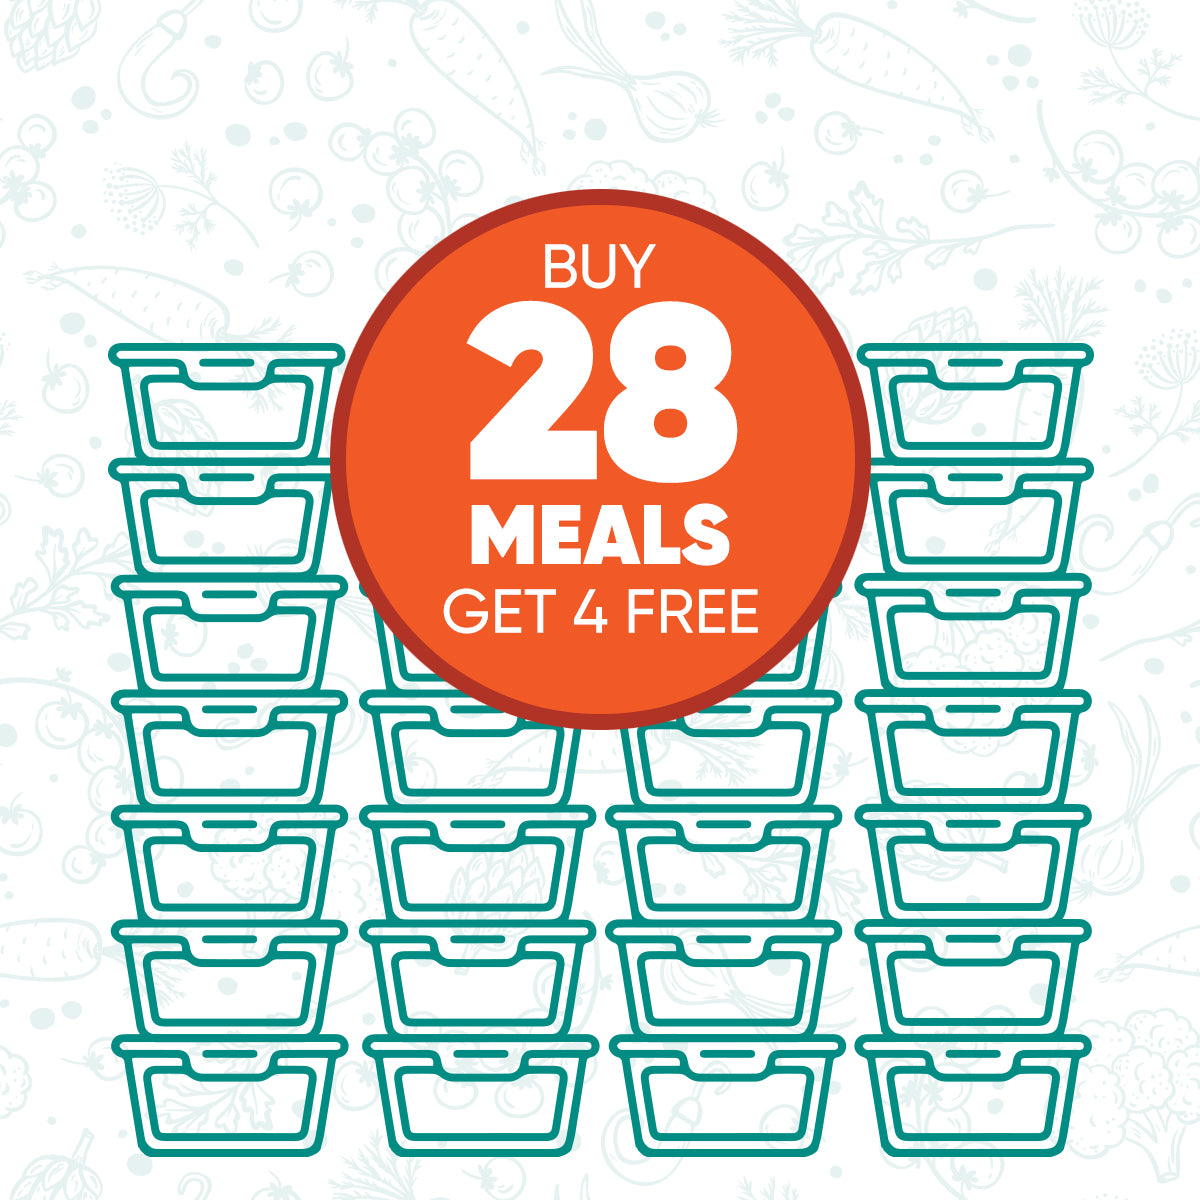 Buy 28 Meals, Get 4 Free